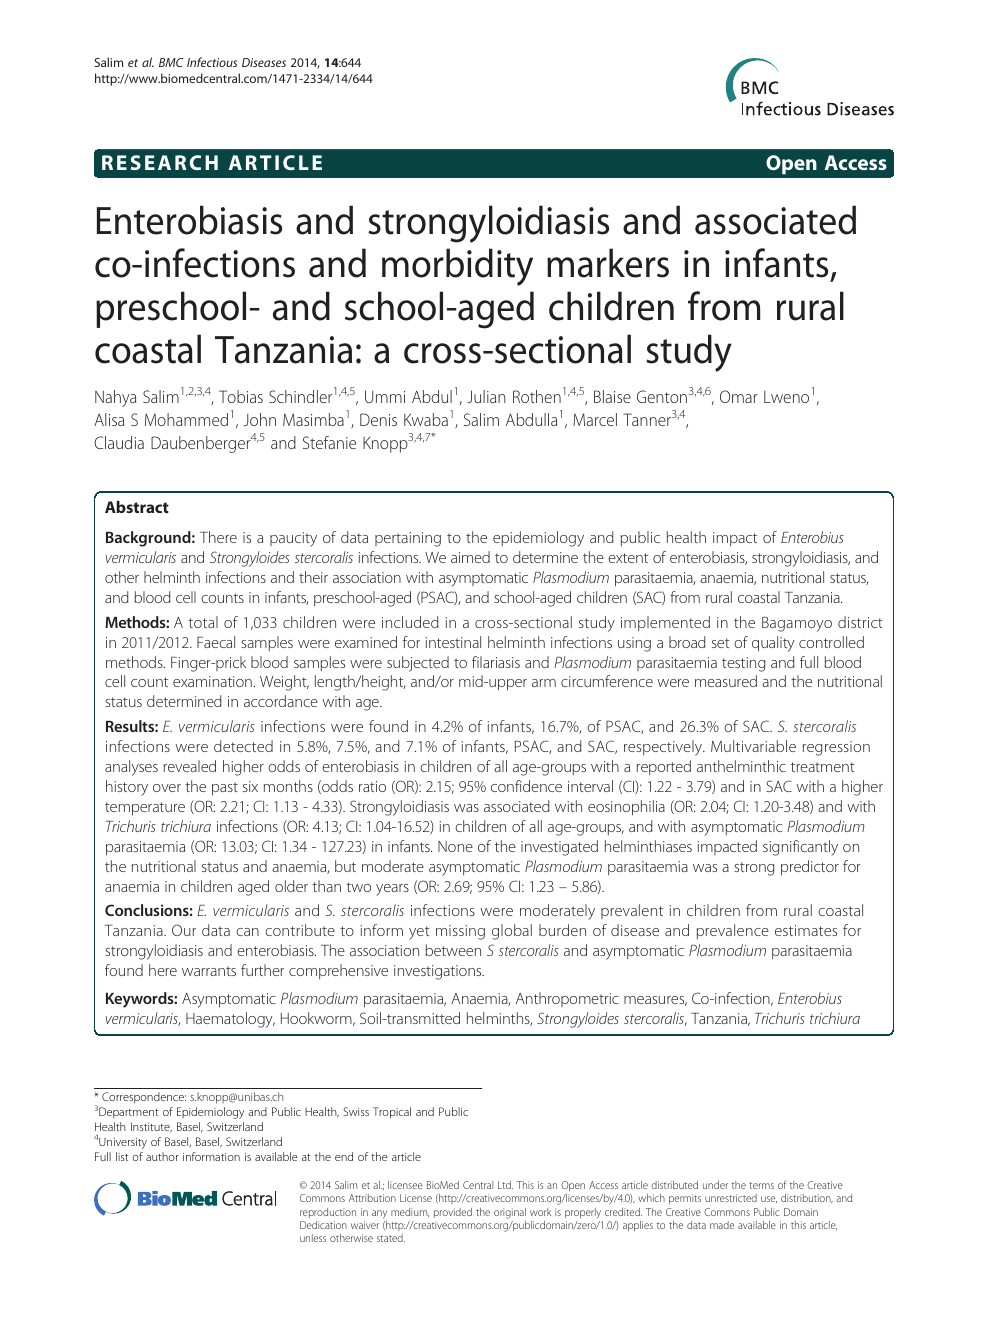 Viszkető nemi szervek Cn enterobiosis Cn az enterobiasis megelőzése